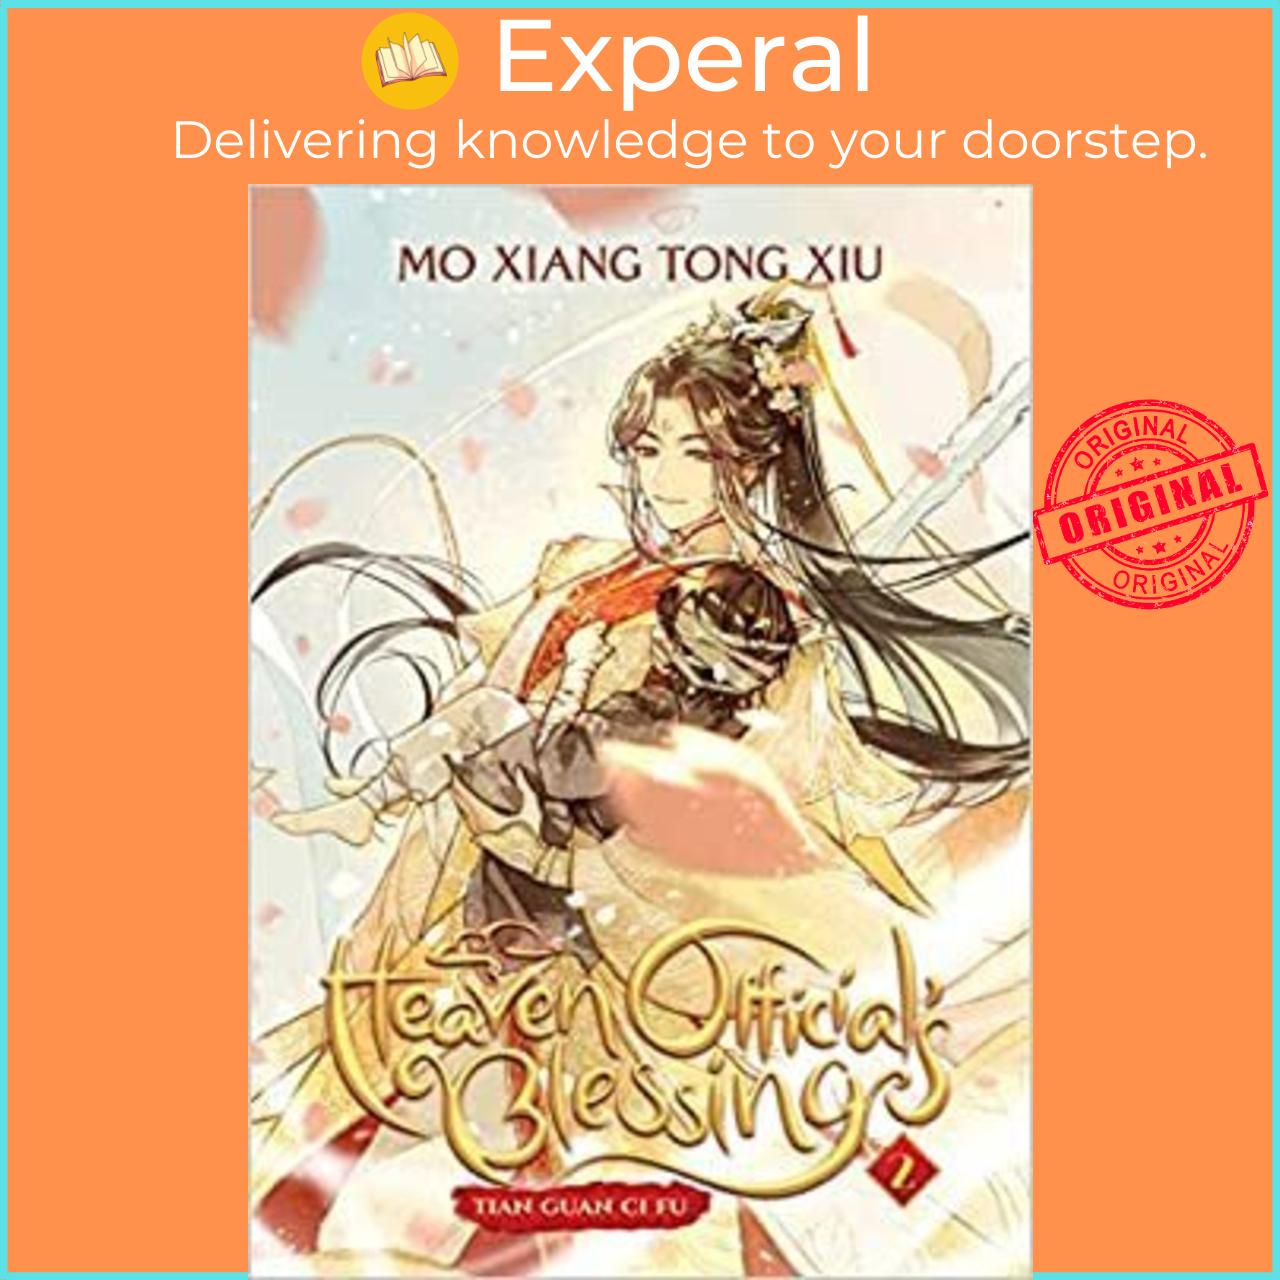 Sách - Heaven Official's Blessing: Tian Guan Ci Fu (Novel) Vol. 2 by Mo Xiang Tong Xiu (US edition, paperback)